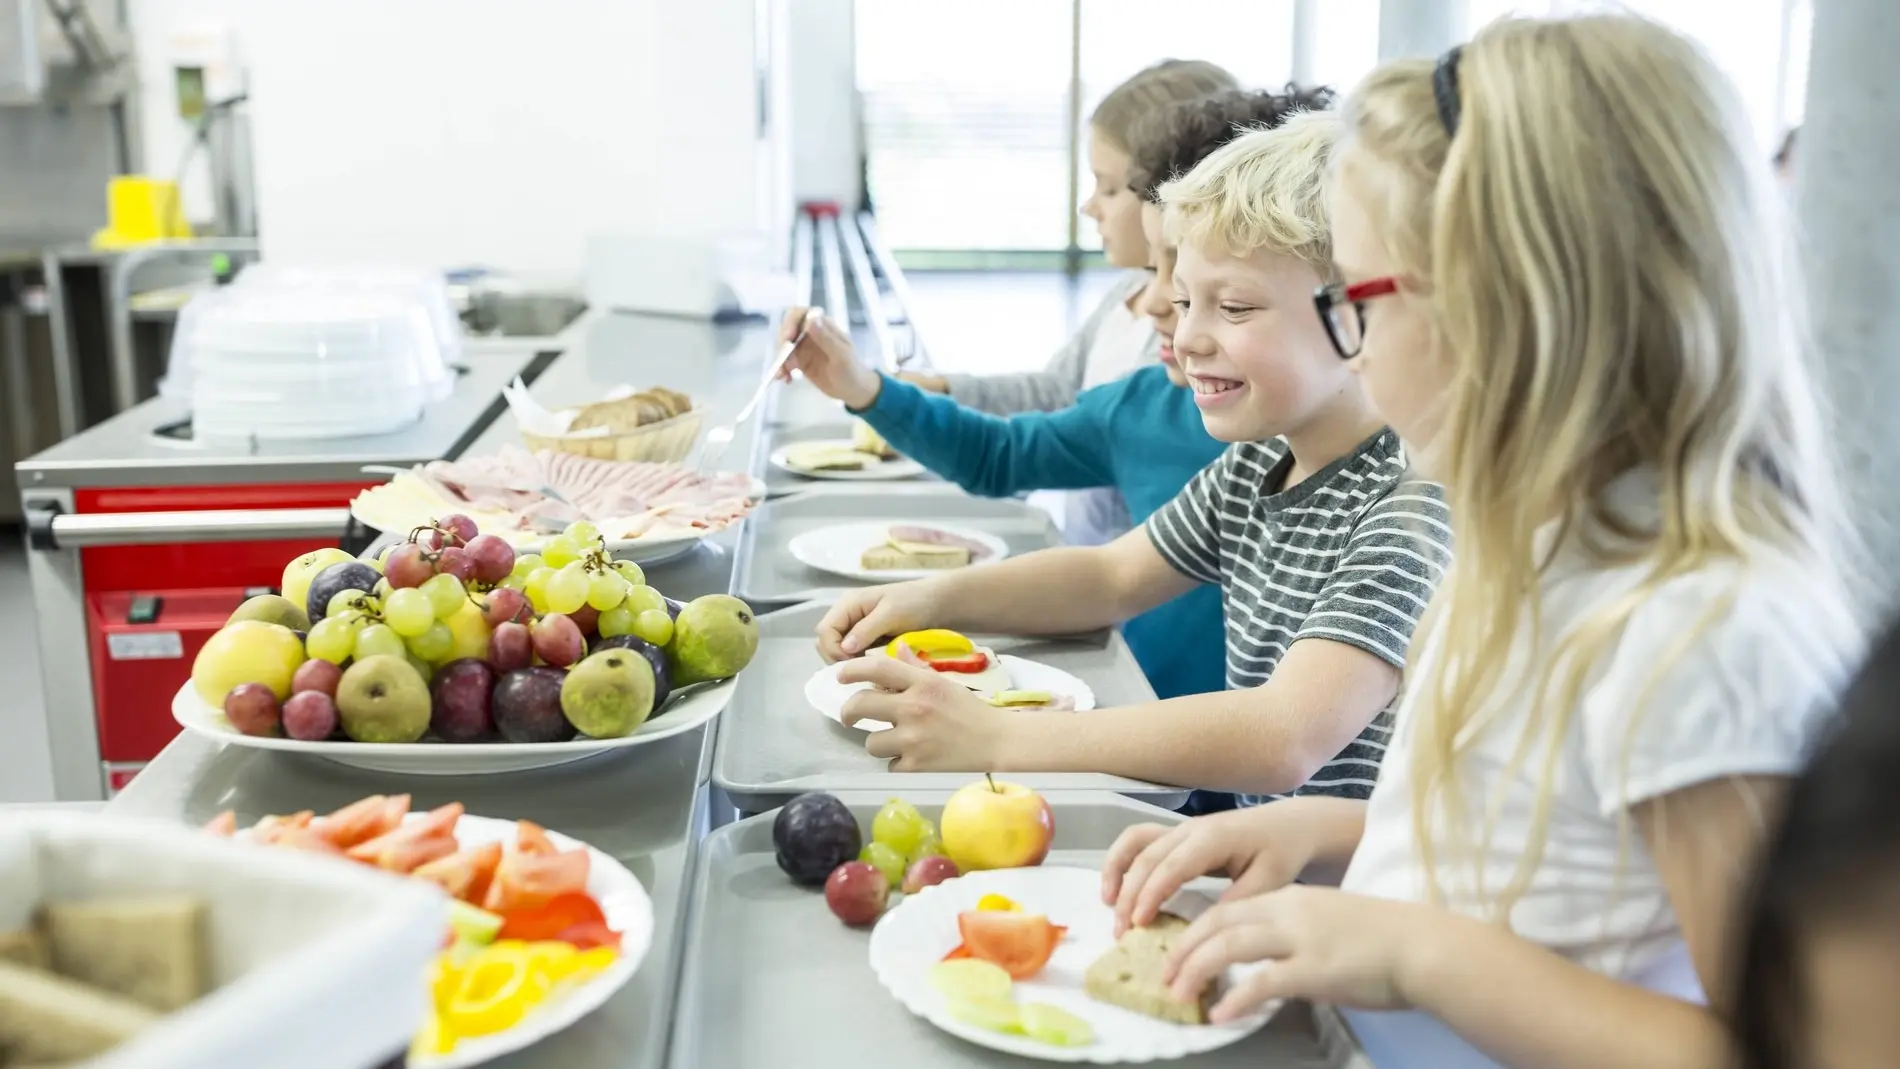 Der Bürgerrat empfiehlt kostenlose und gesunde Ernährung für Kinder und Jugendliche